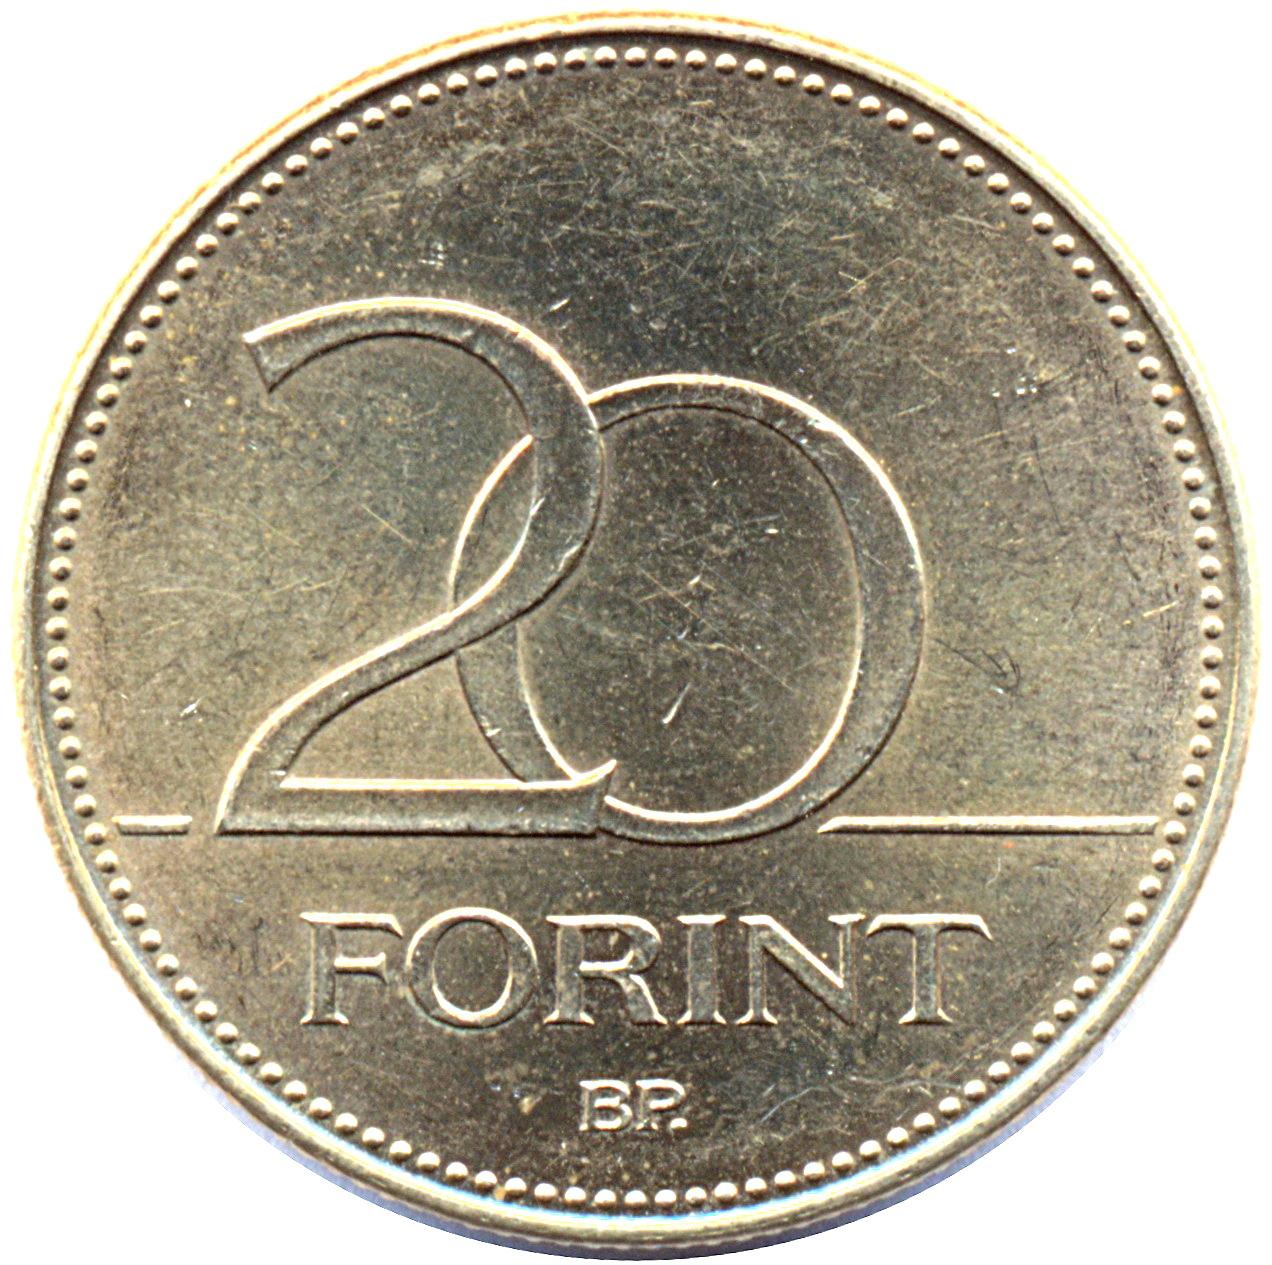 Forint